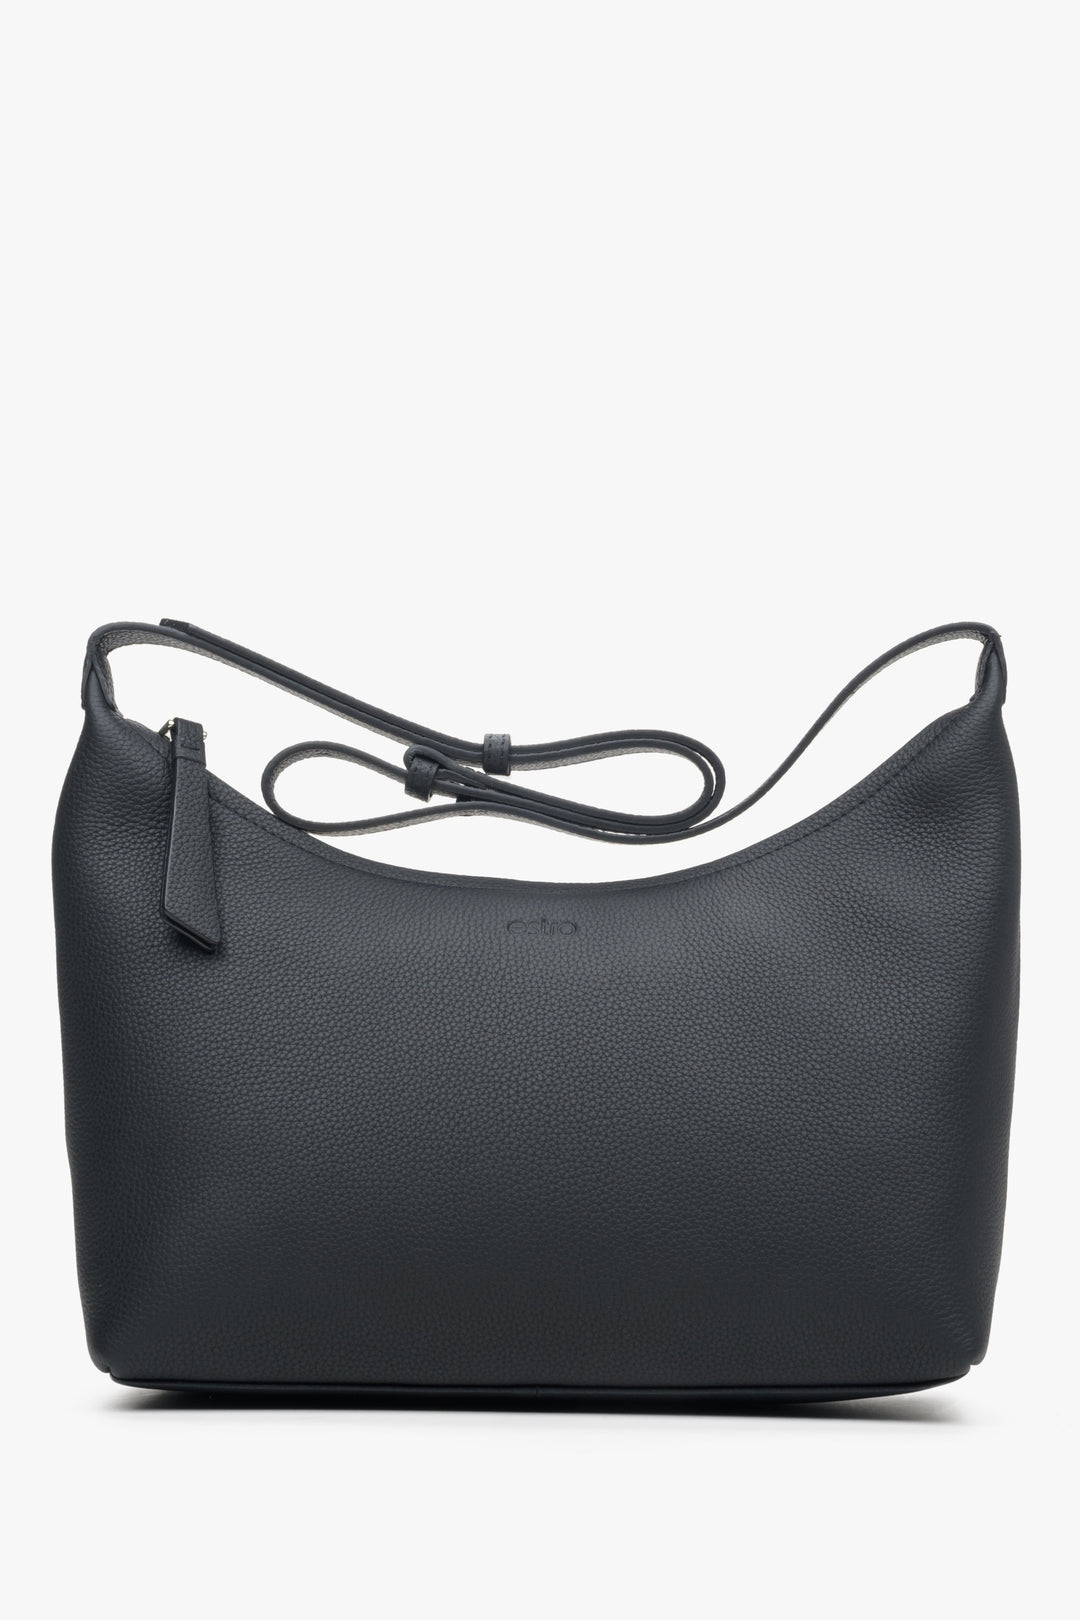 Women's Black Shoulder Bag made of Genuine Leather Estro ER00113901.